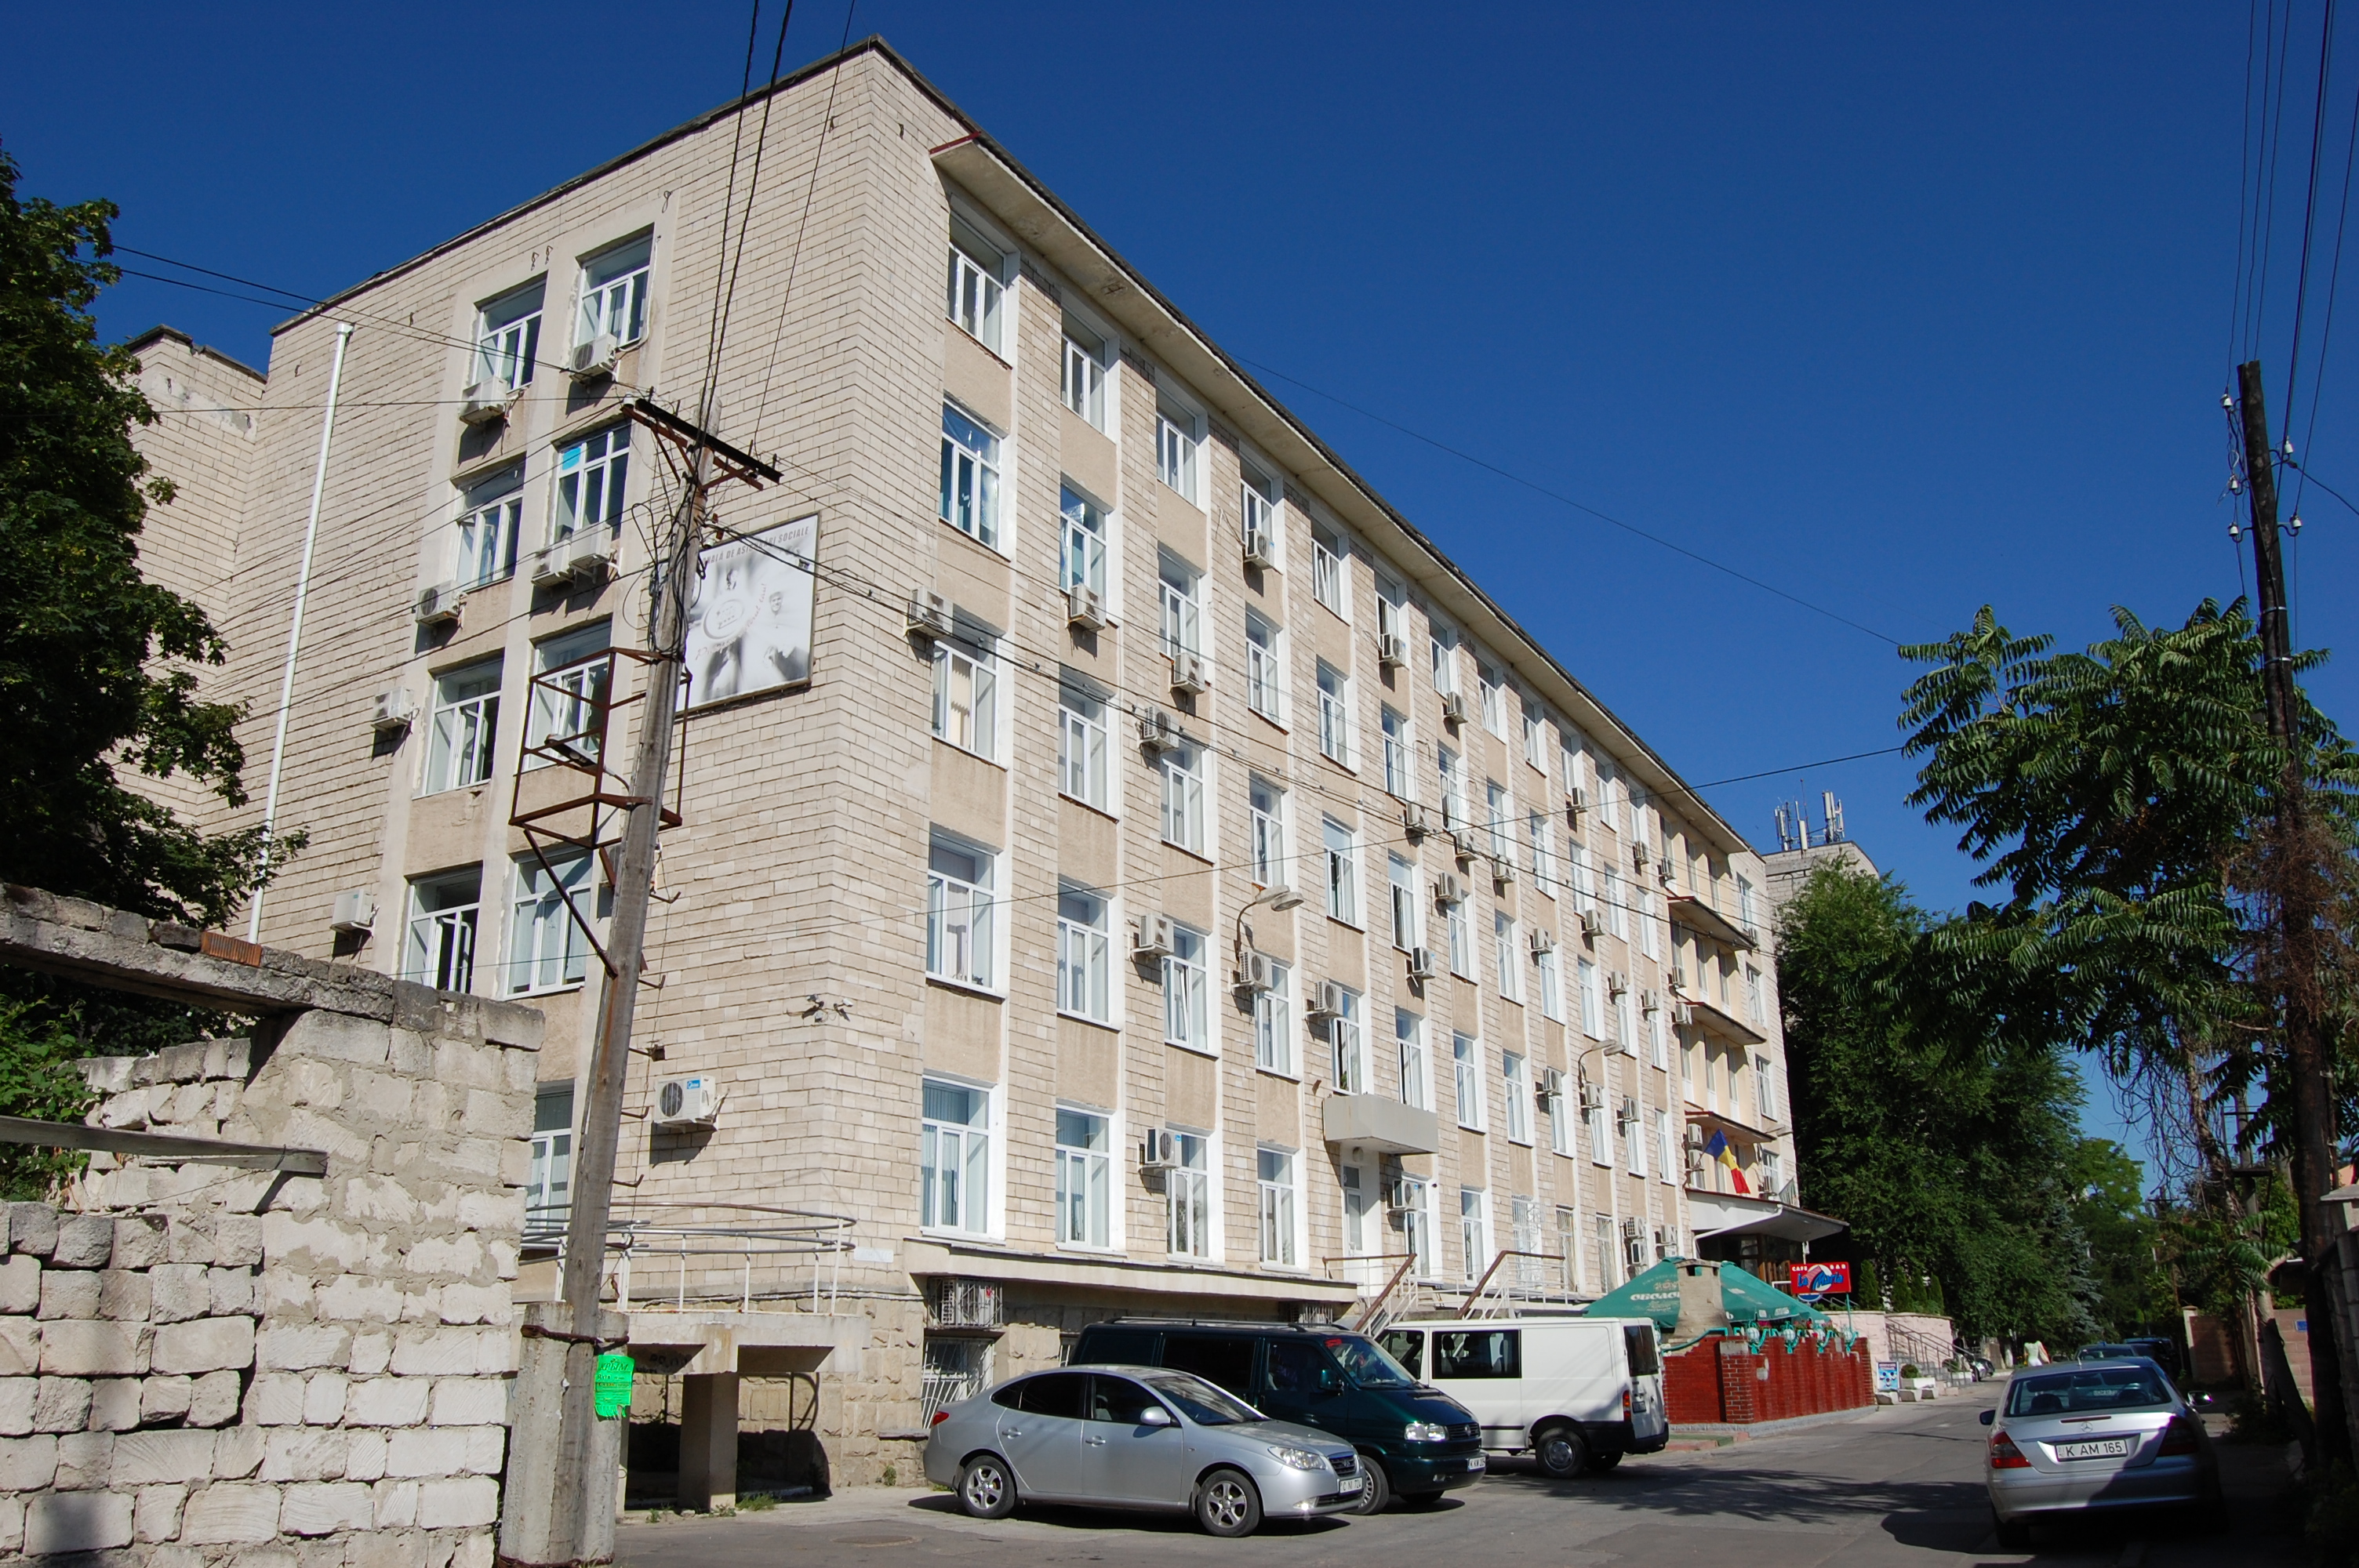 MD, Orasul Chişinău, CNAS, Casa Nationala de Asigurari Sociale, strada Gheorghe Tudor, 3, MD-2028, Chişinău